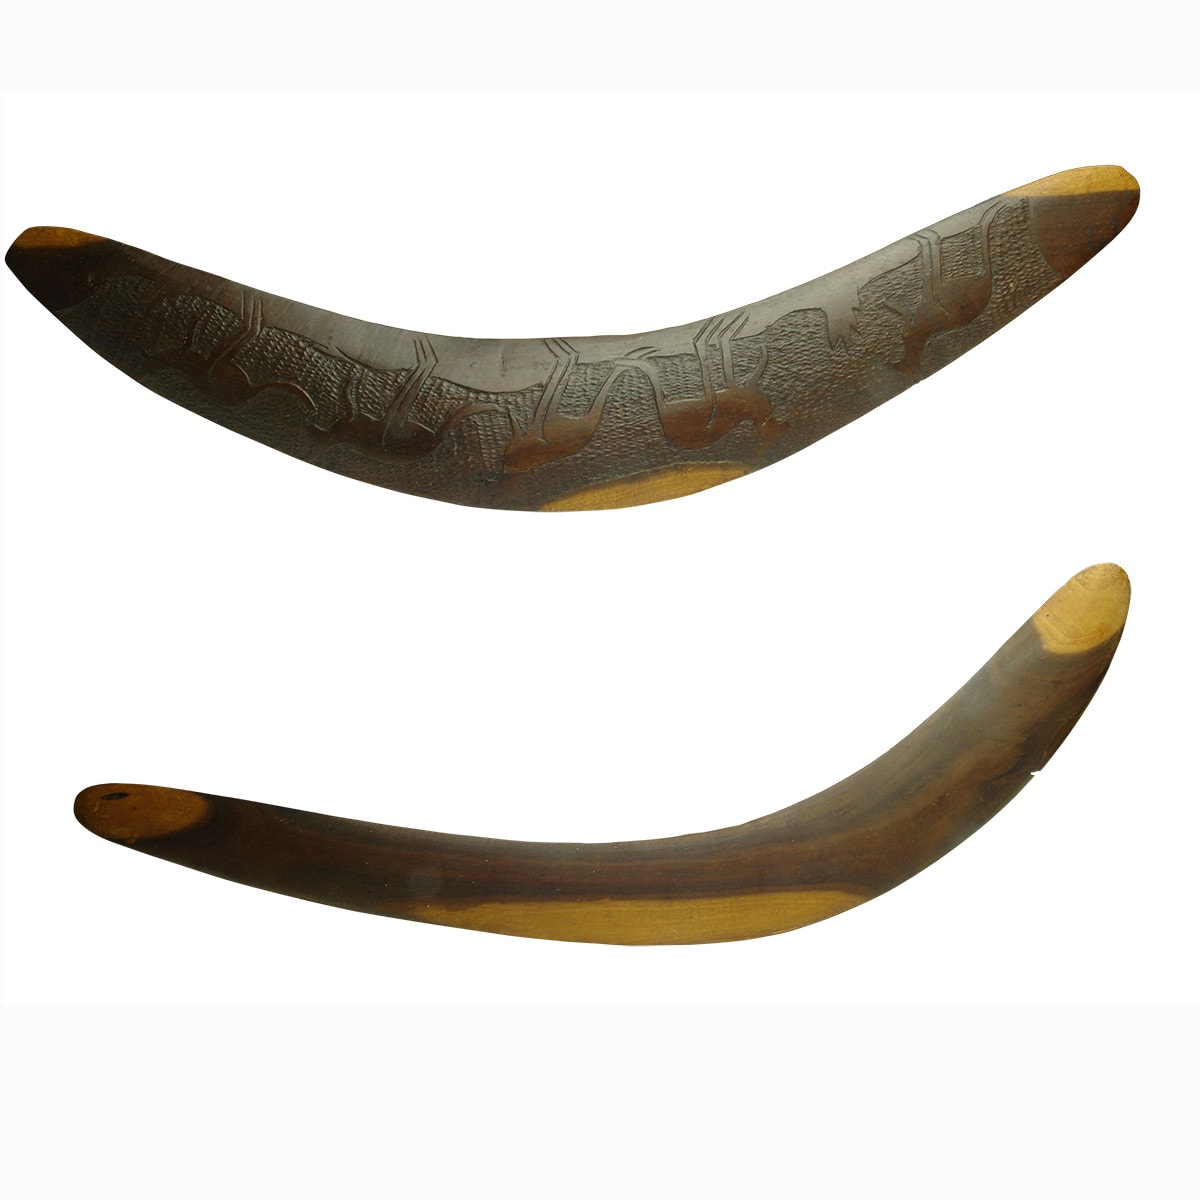 Pair of boomerangs